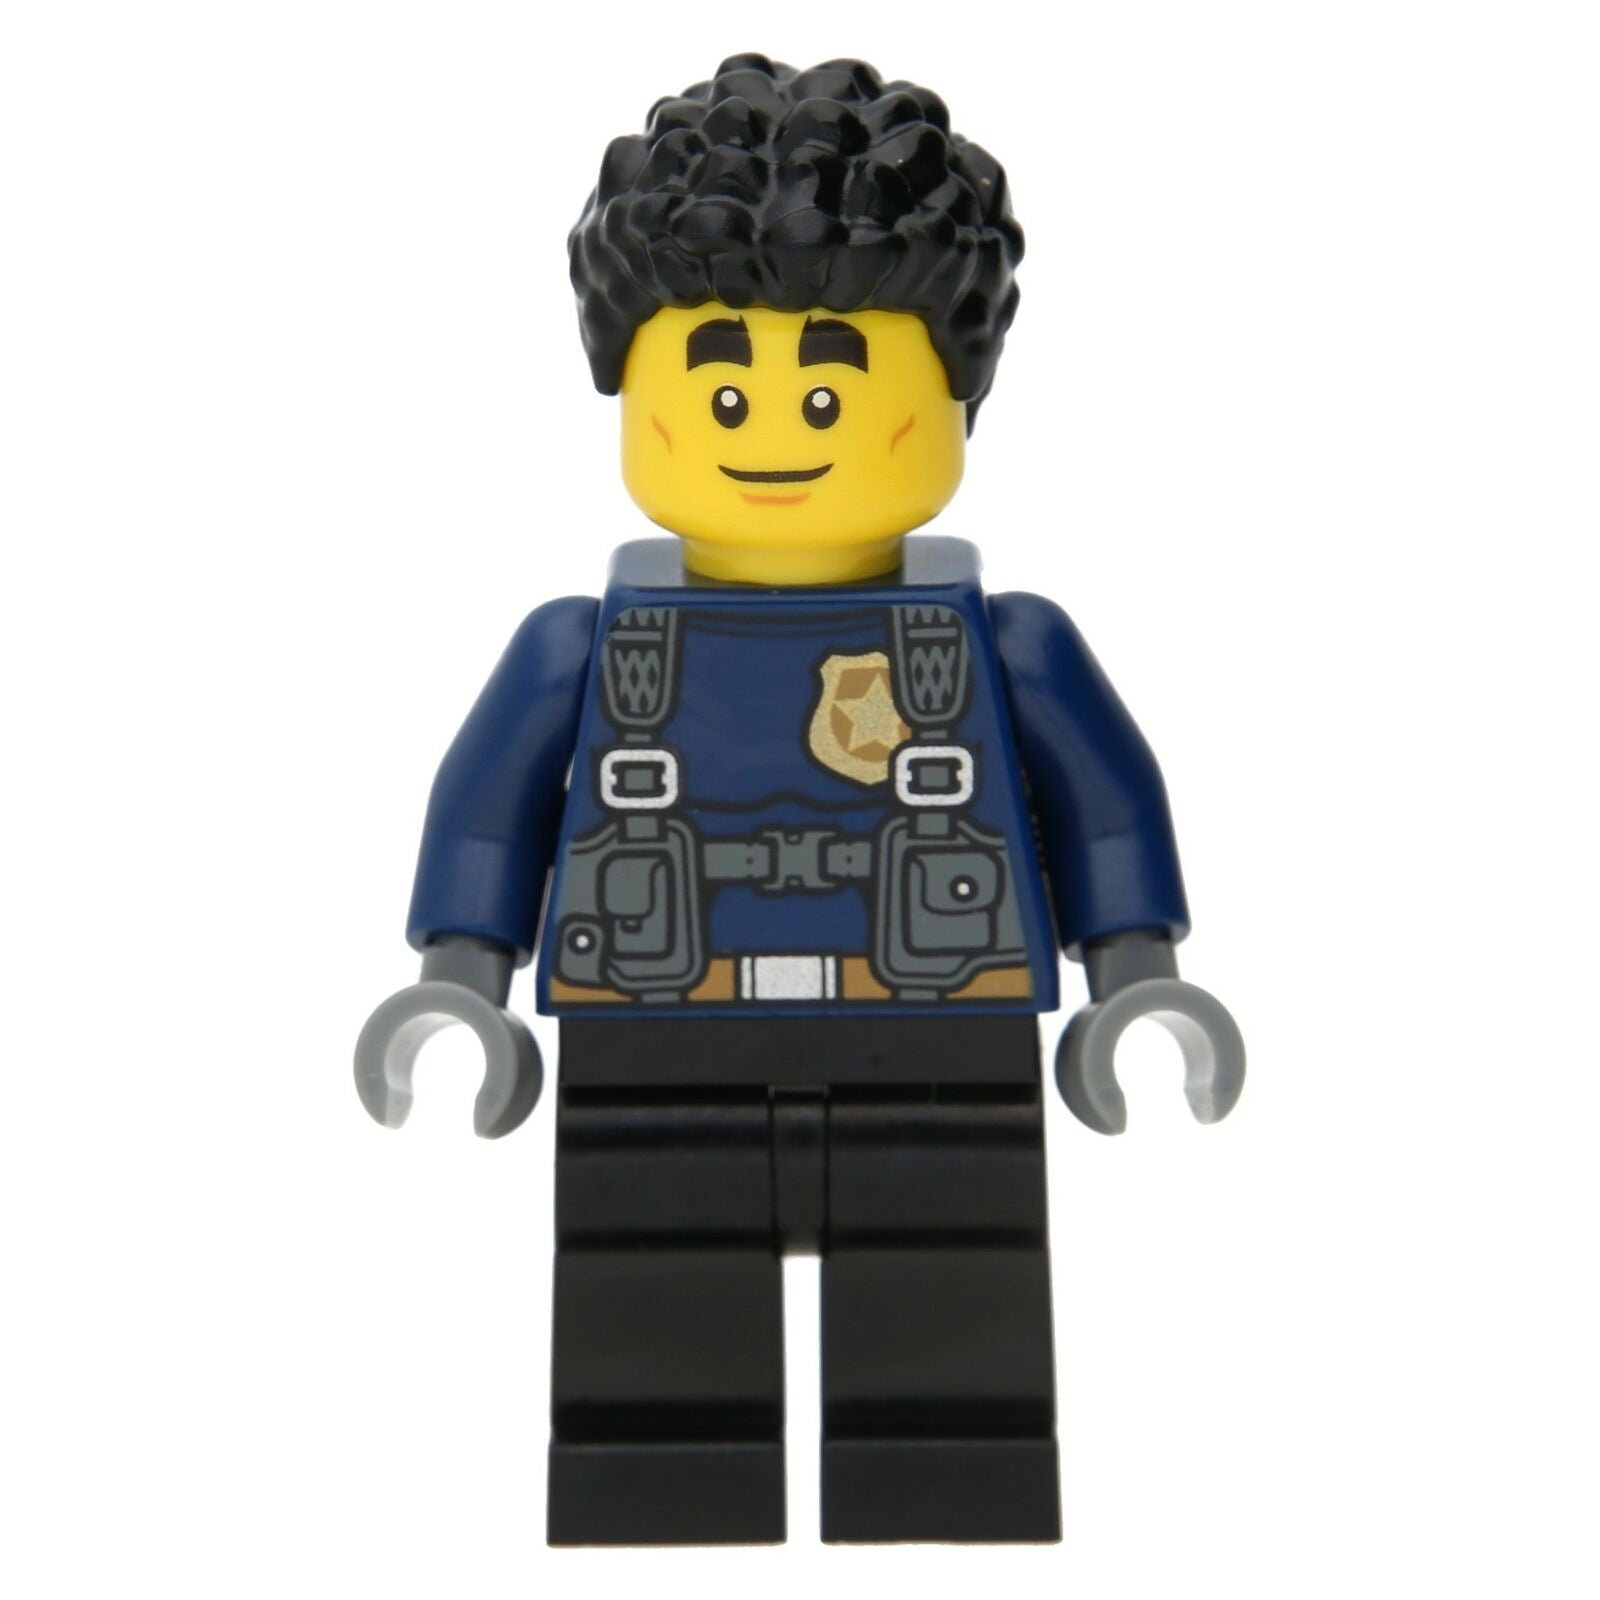 LEGO City Minifigure - Police Officer Duke Detail